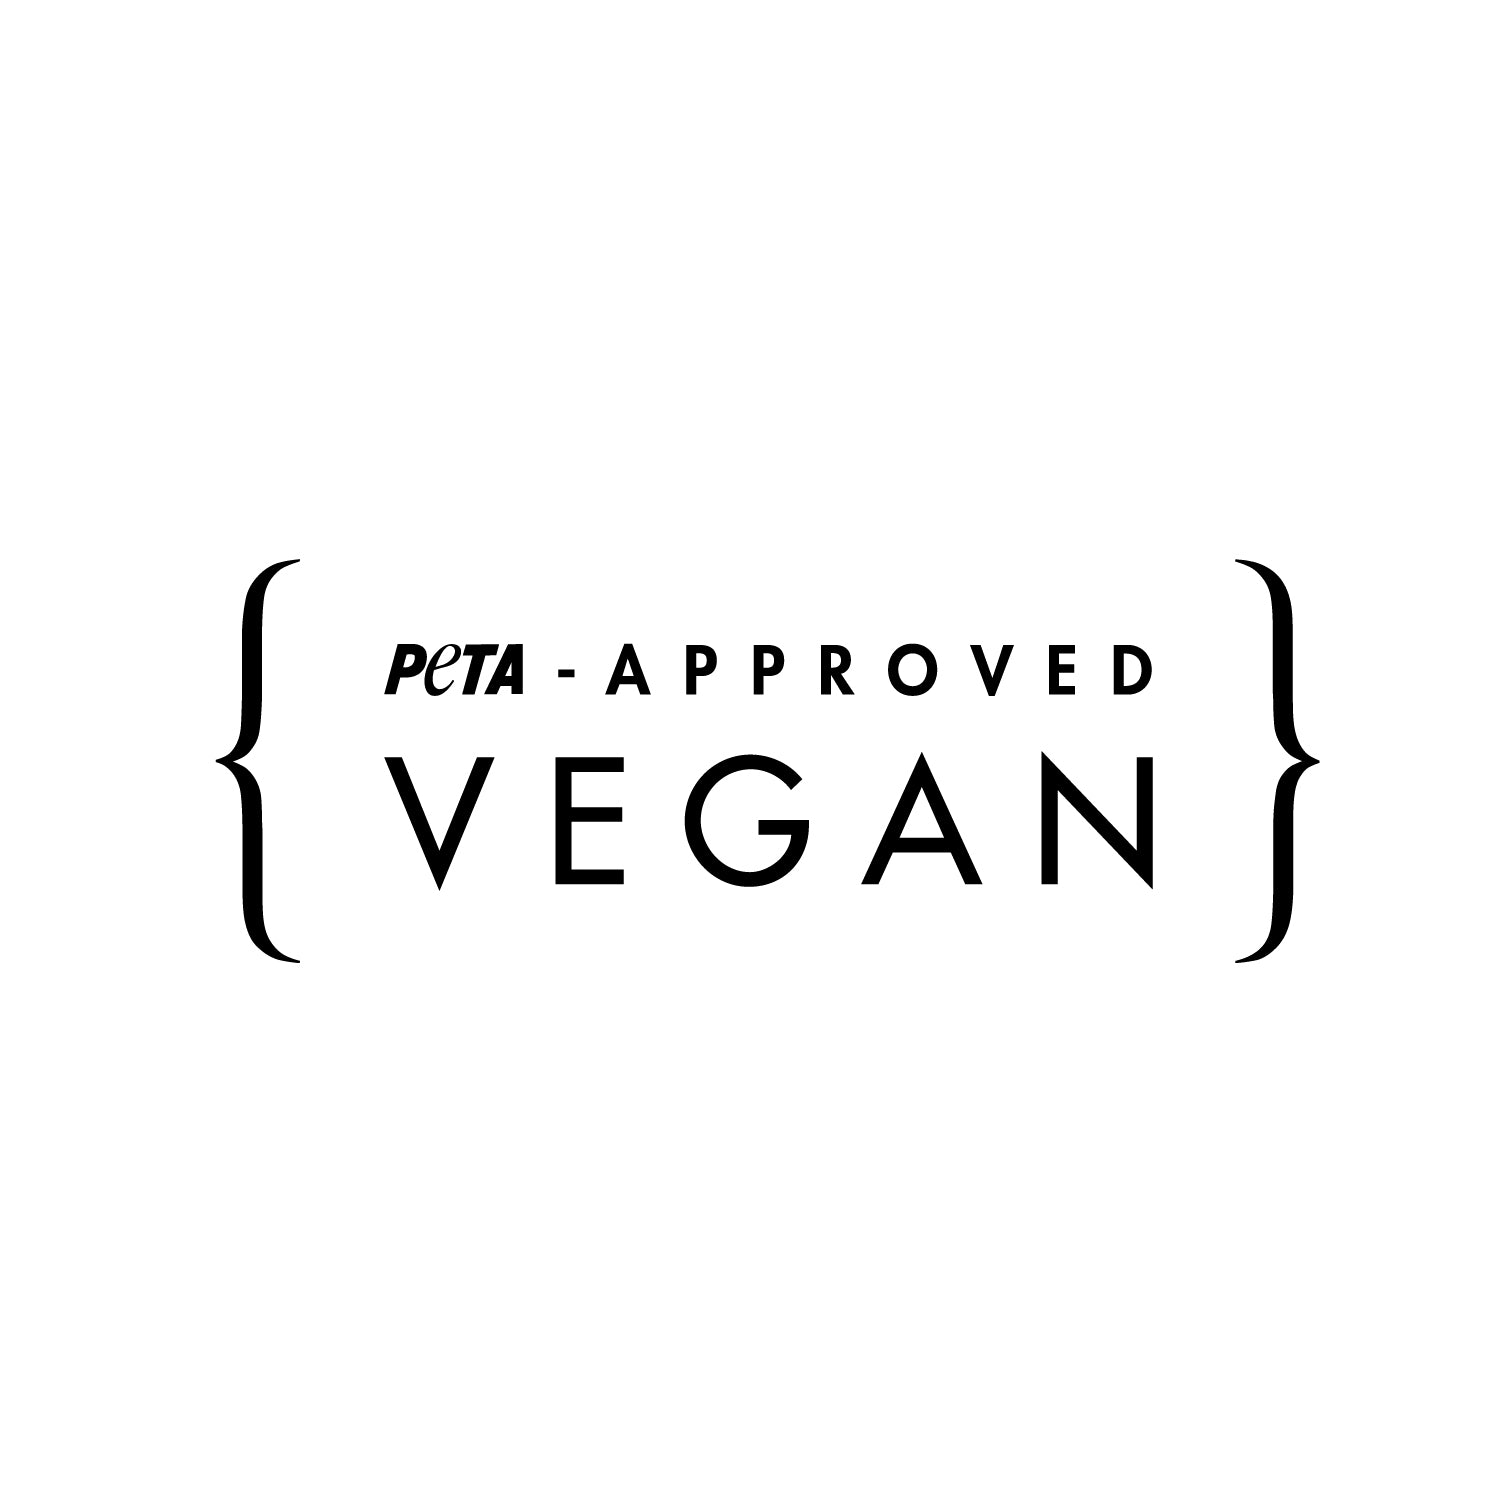 PETA-Approved Vegan